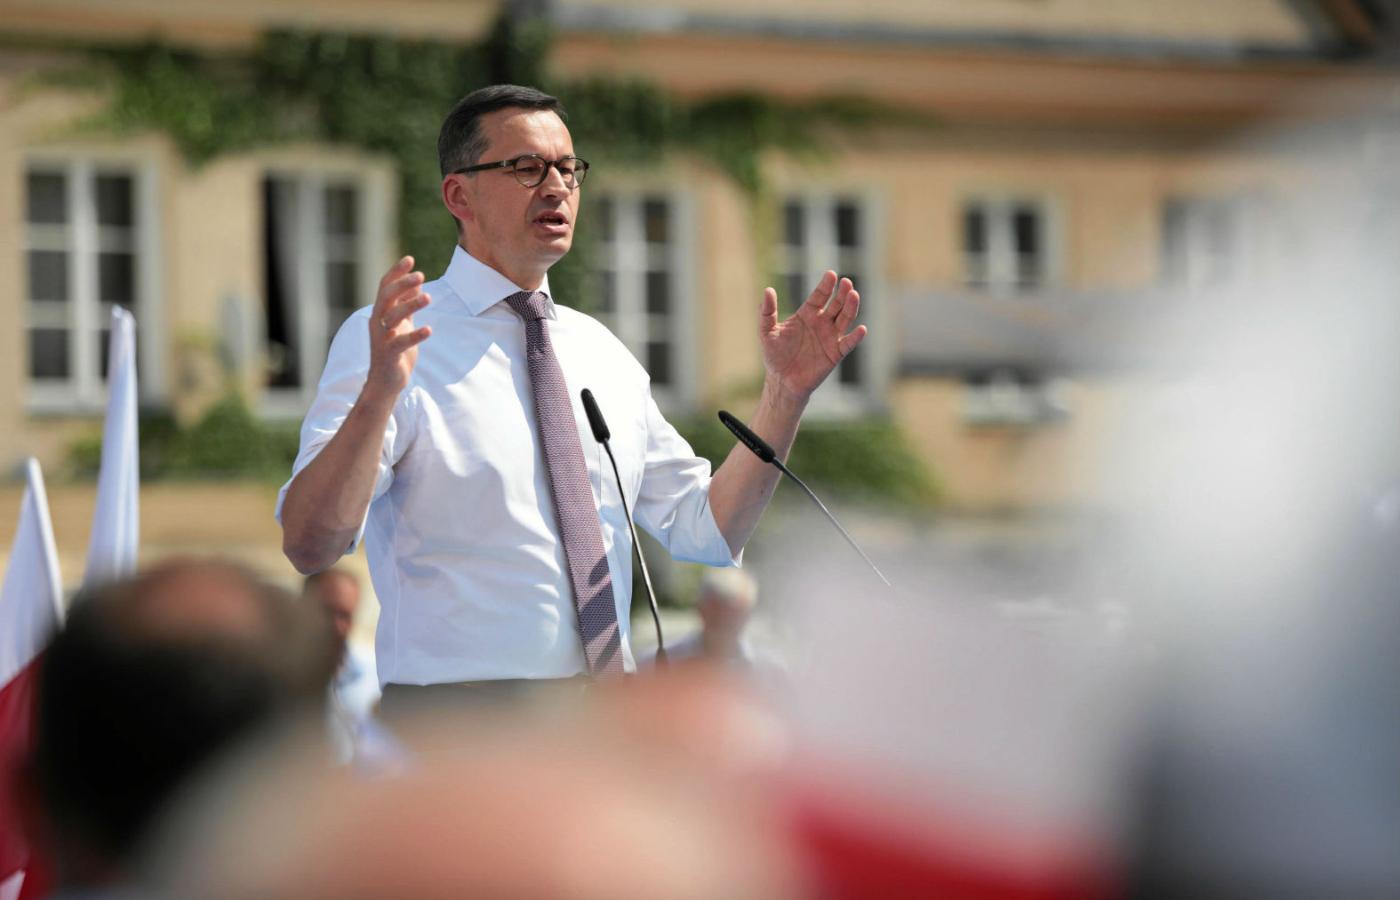 Szczegółowo wyreżyserowane „spotkanie z wyborcami” w Sandomierzu miało zarysować kontury i nadać ton kampanii samorządowej.